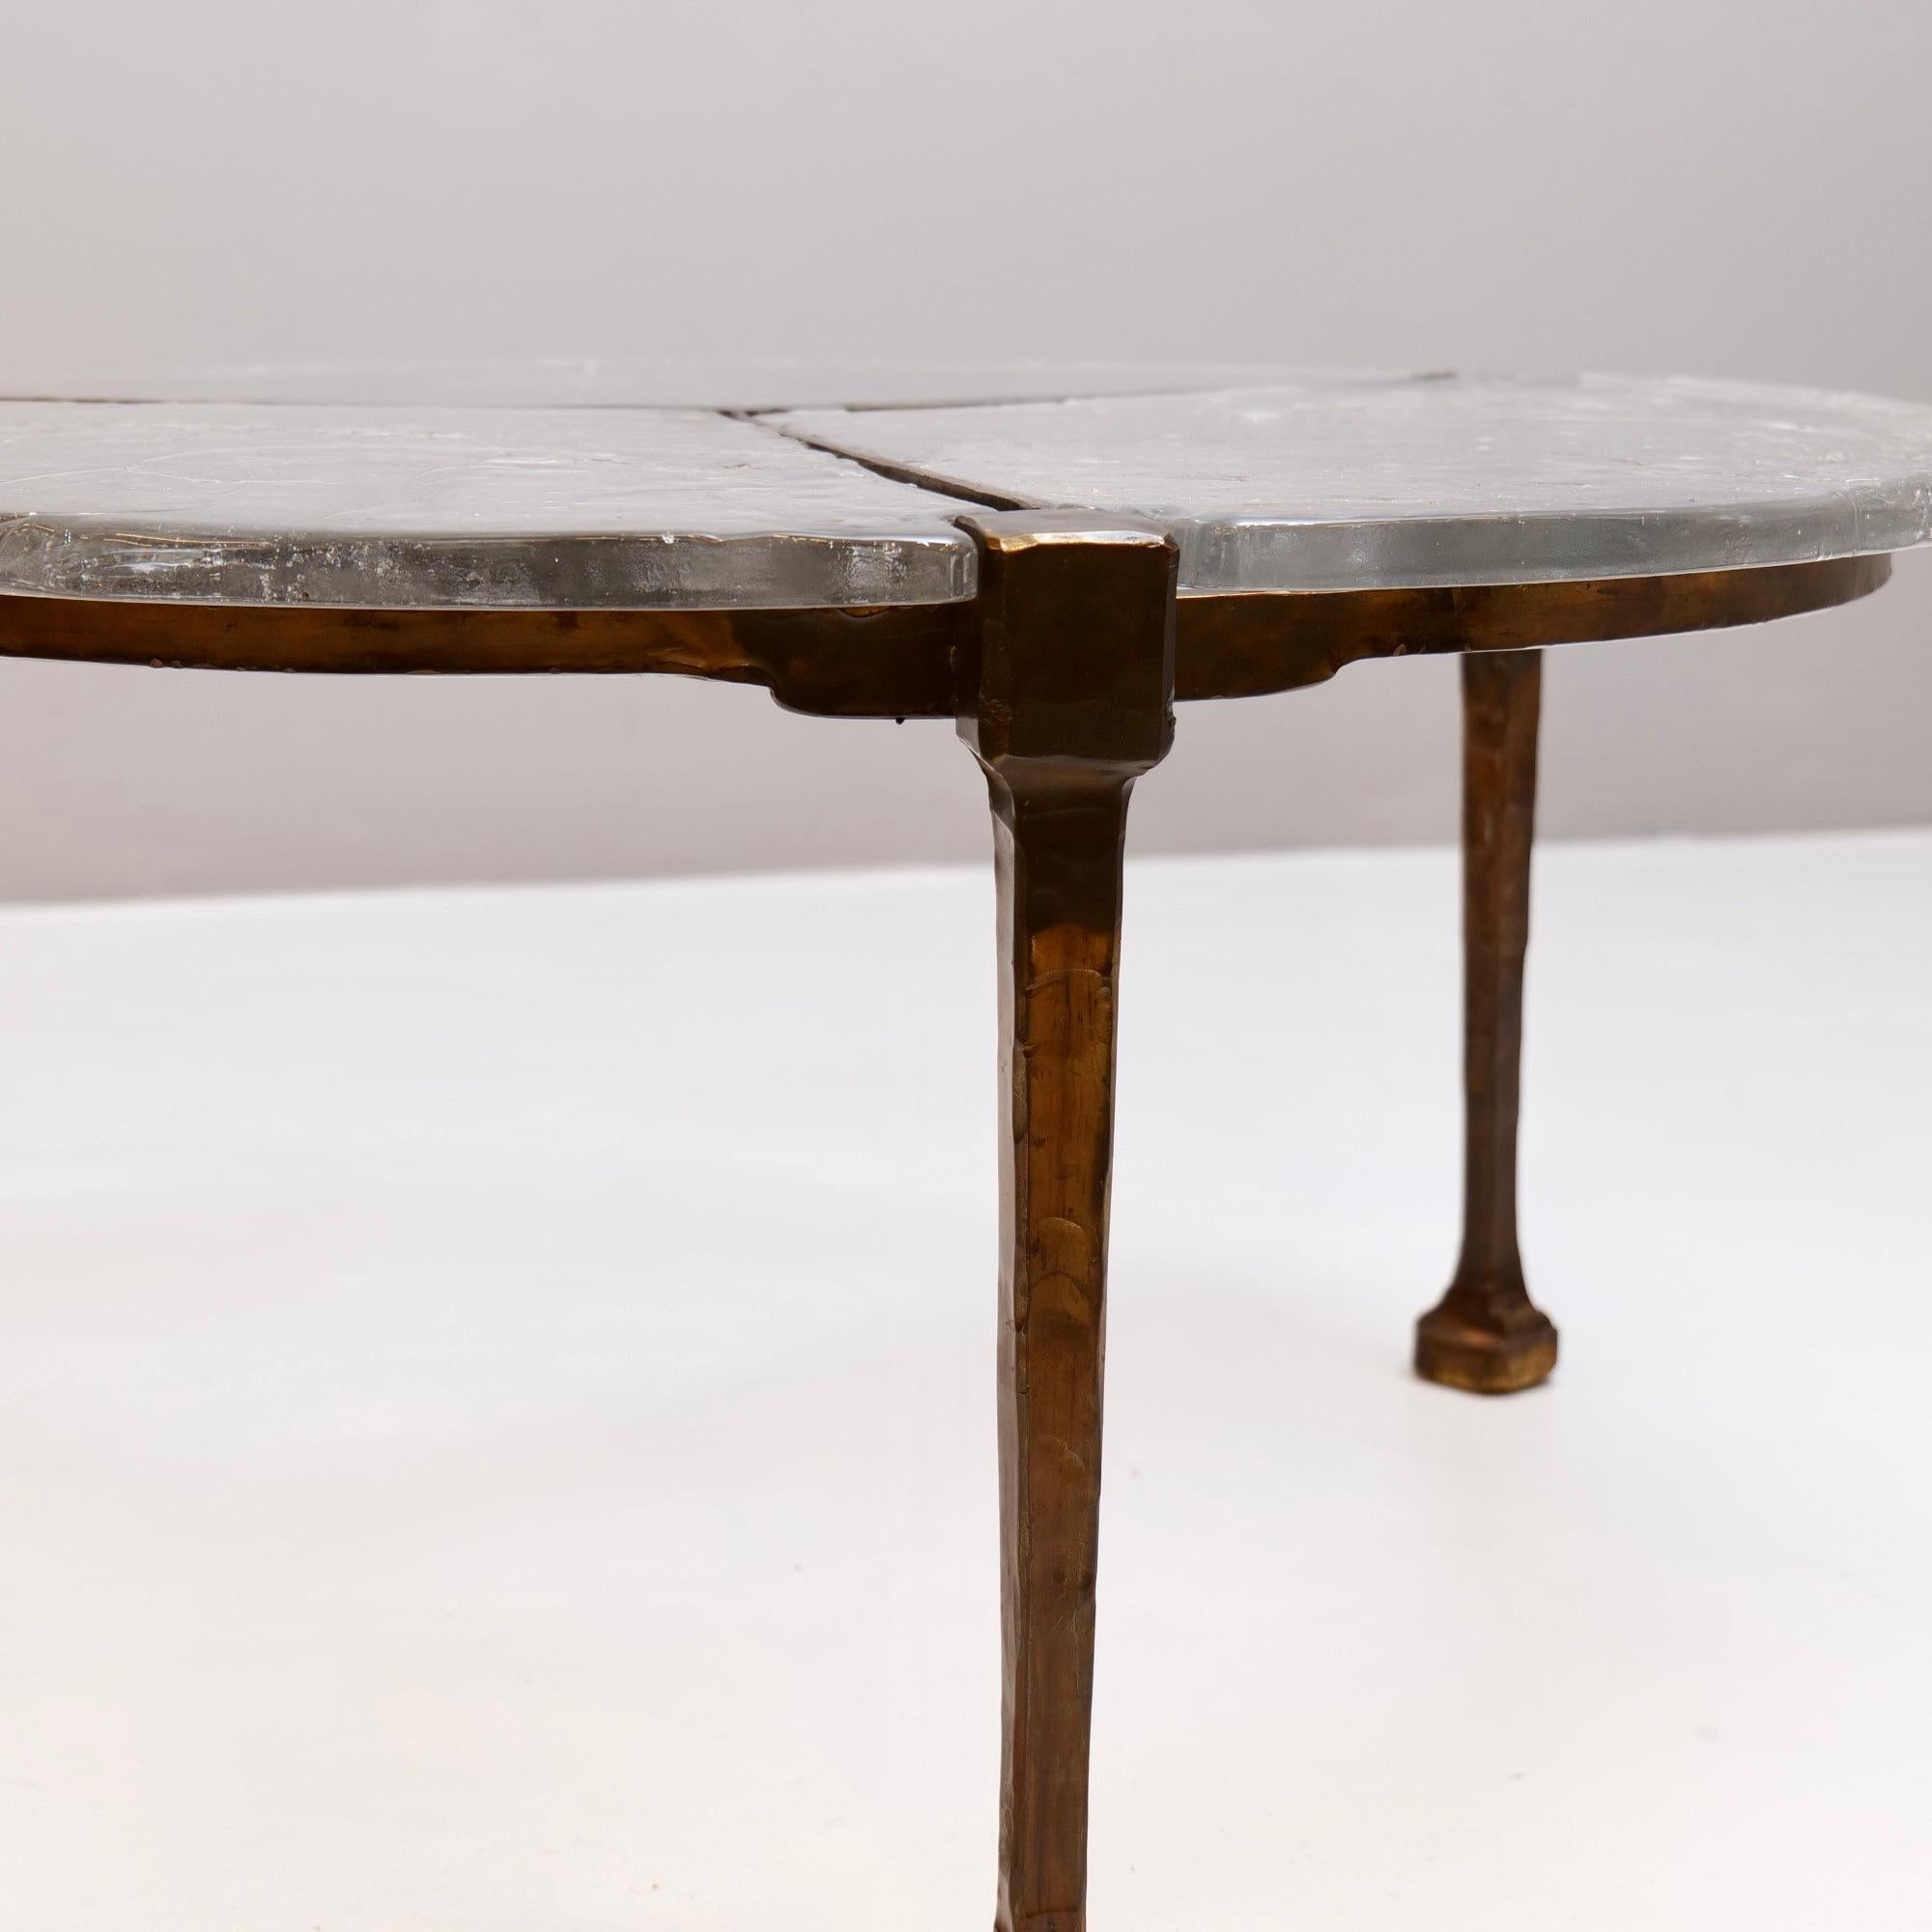 Geschmiedeter Tisch aus Bronze und Glas von Lothar Klute – 1980er Jahre (Ende des 20. Jahrhunderts)